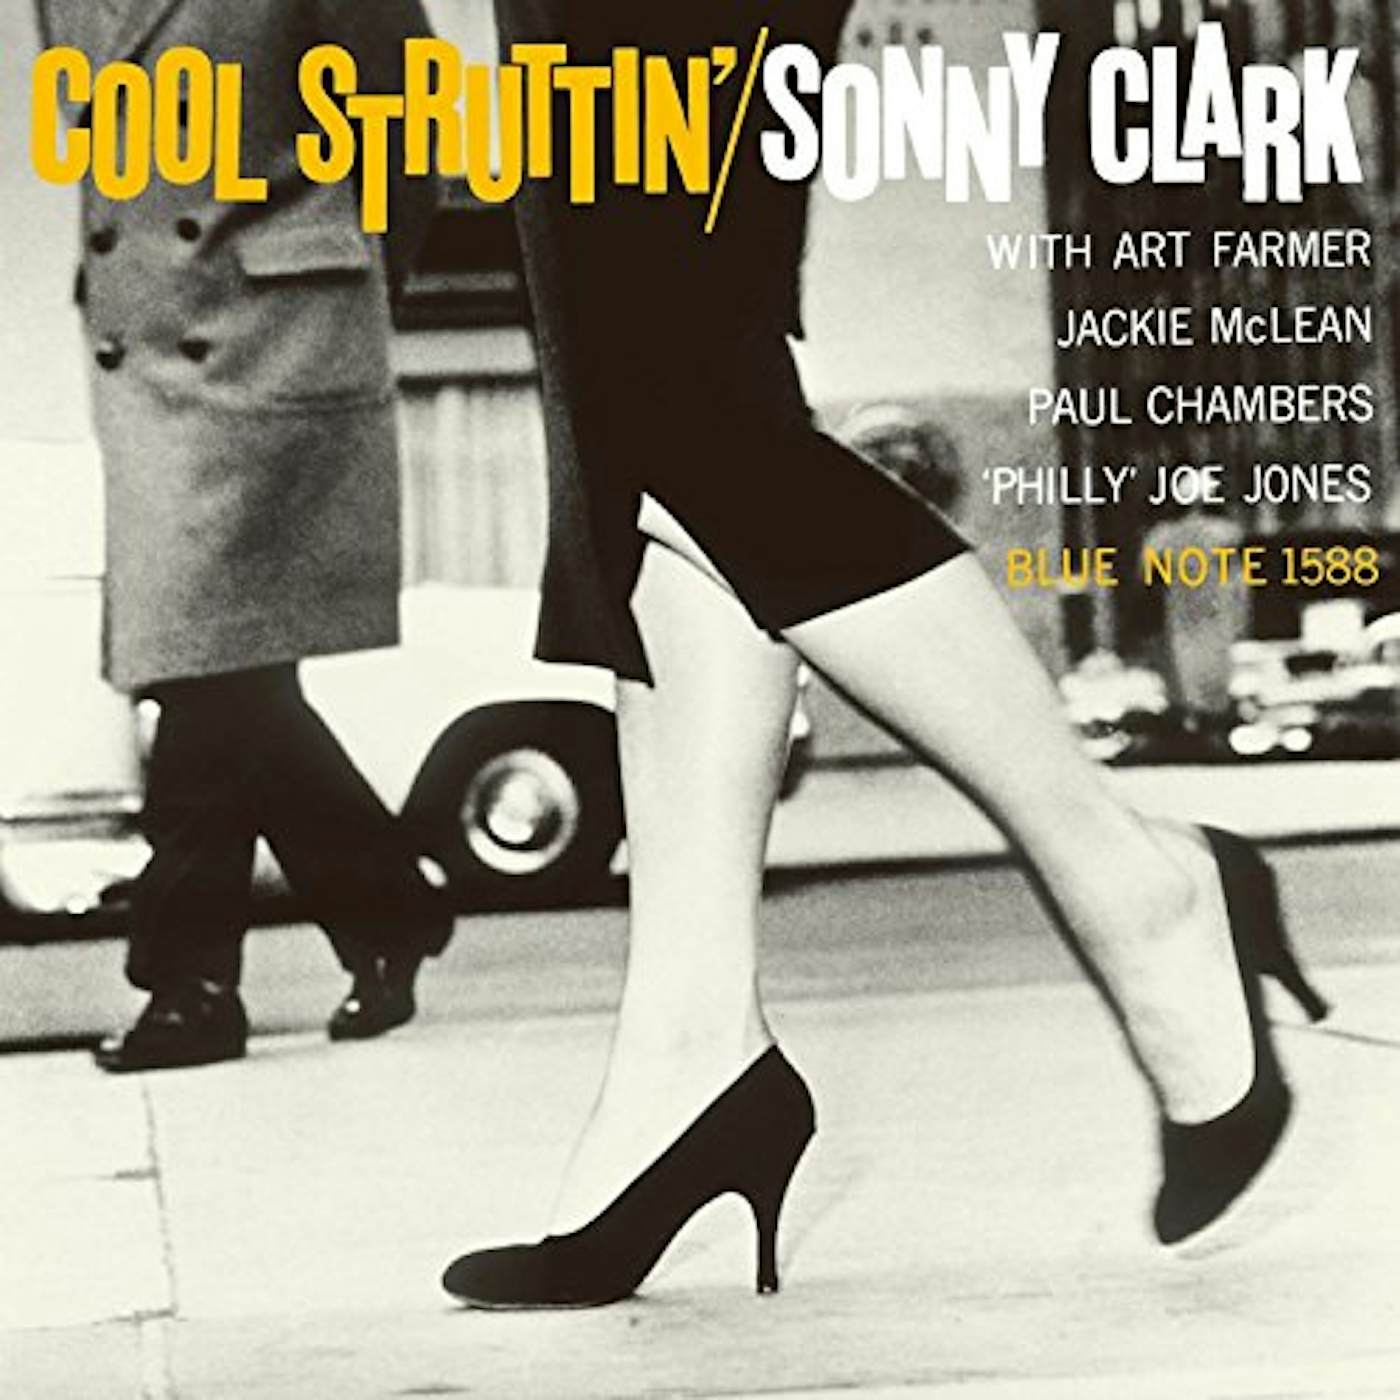 Sonny Clark COOL STRUTTIN' Vinyl Record